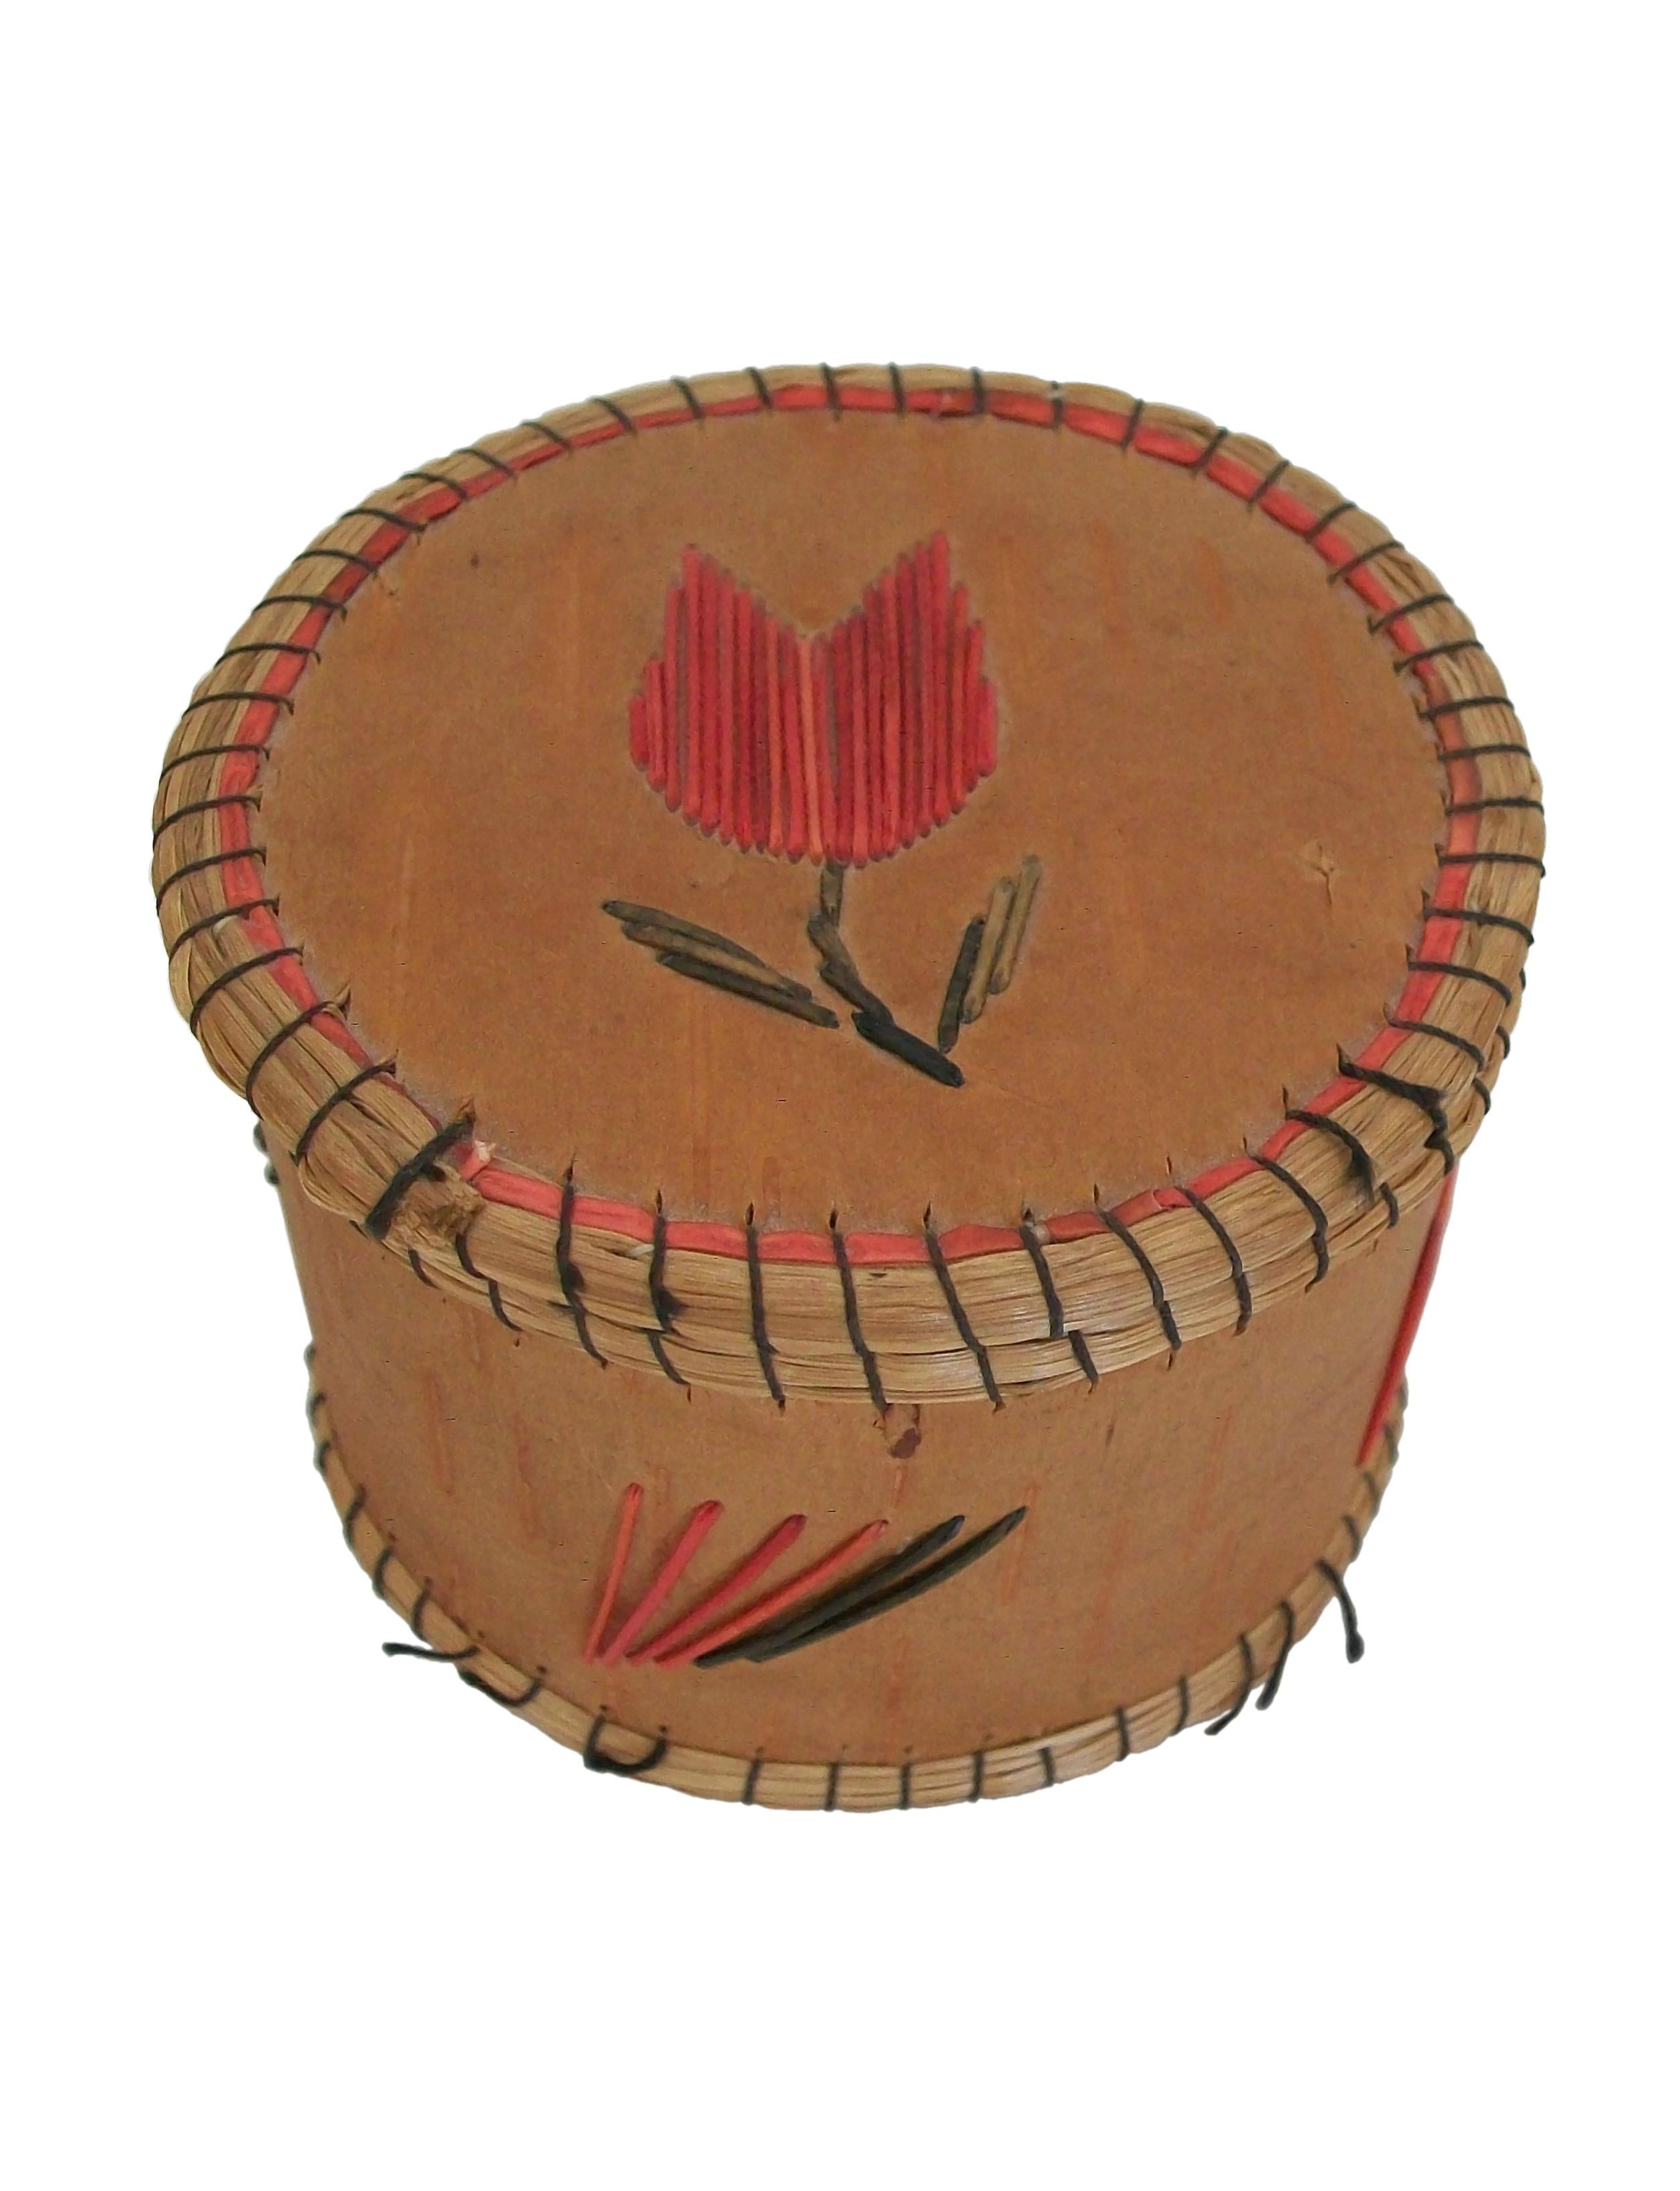 Boîte à couvercle en écorce de bouleau de style chippewa (également connu sous le nom d'Ojibwe), décorée de piquants de porc-épic et de bords en foin d'odeur fixés avec du fil noir. Elle présente une tulipe rouge finement piquée avec une tige et des